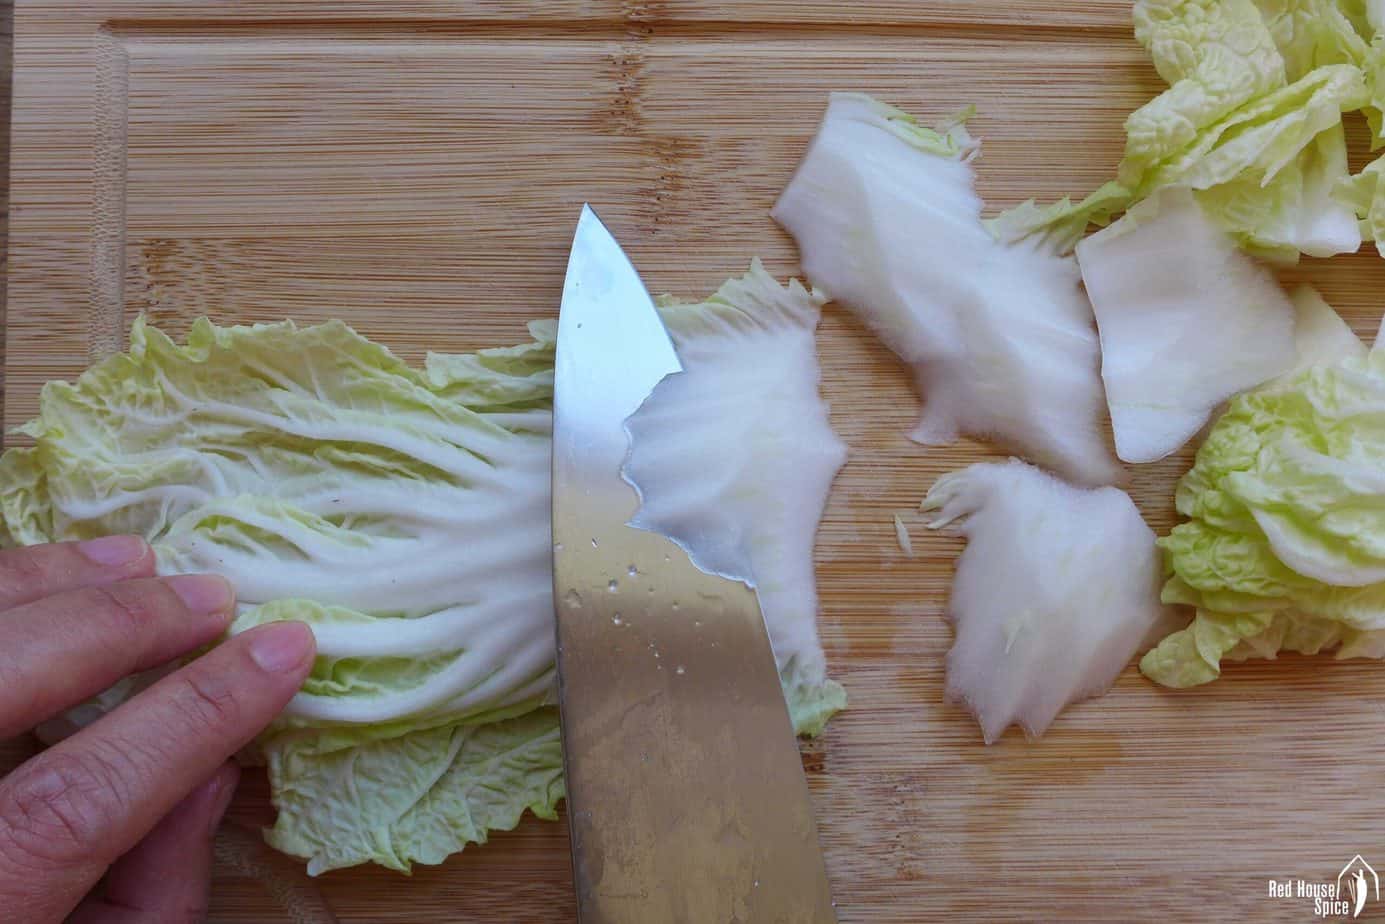 slicing napa cabbage at an angle